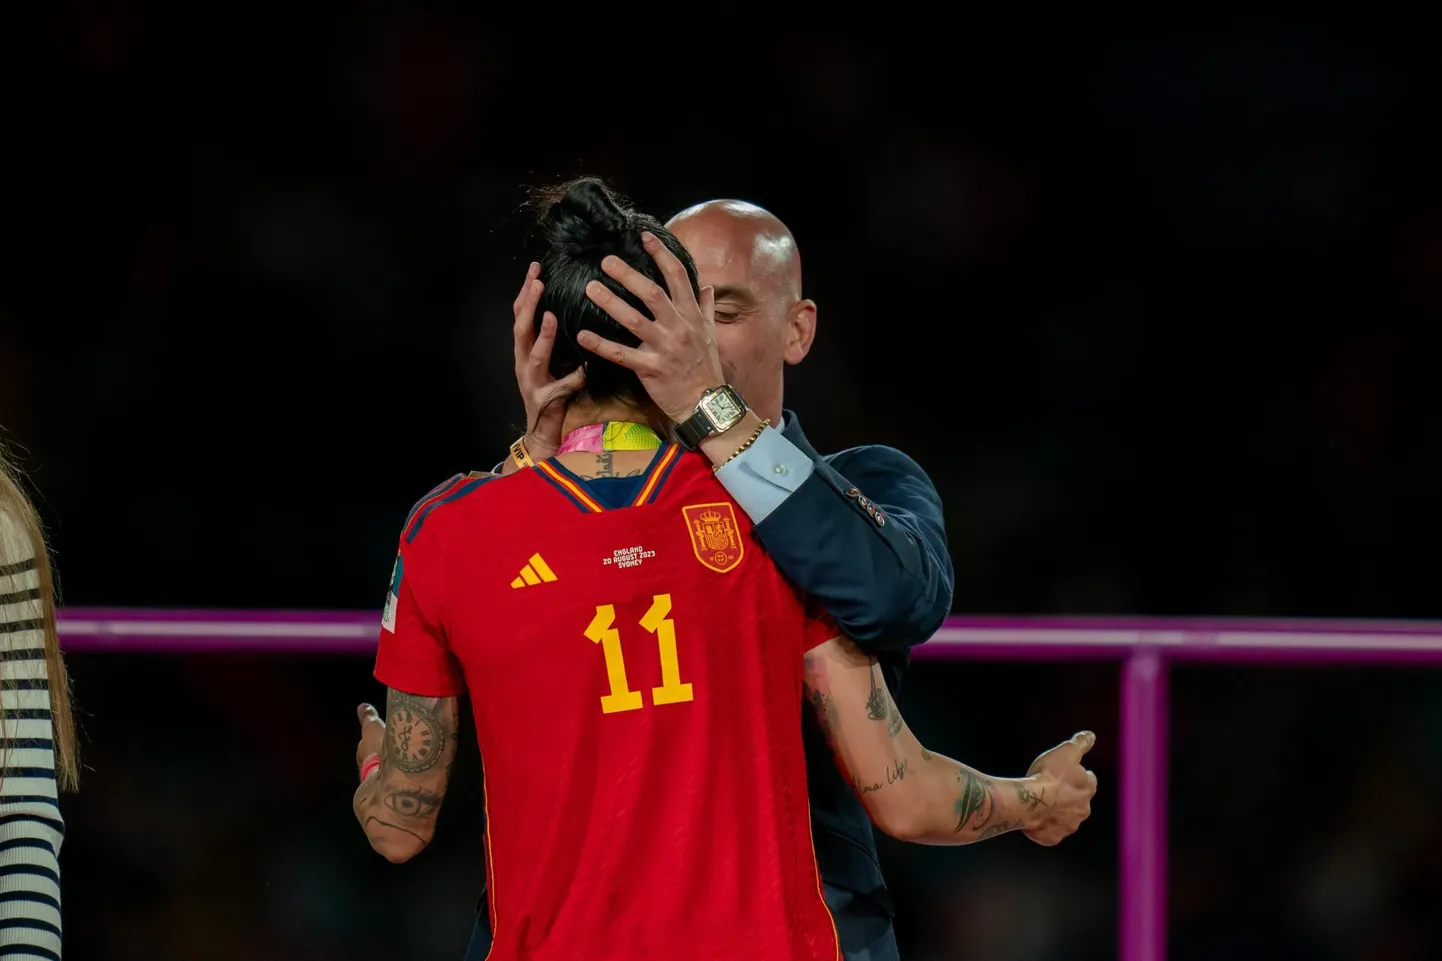 Pildimeenutus 20. augustist. Sydneys peetud MMi finaali järel suudleb Hispaania jalgpalliliidu president Luis Rubiales (taga) mängijat Jennifer Hermosot huultele. 